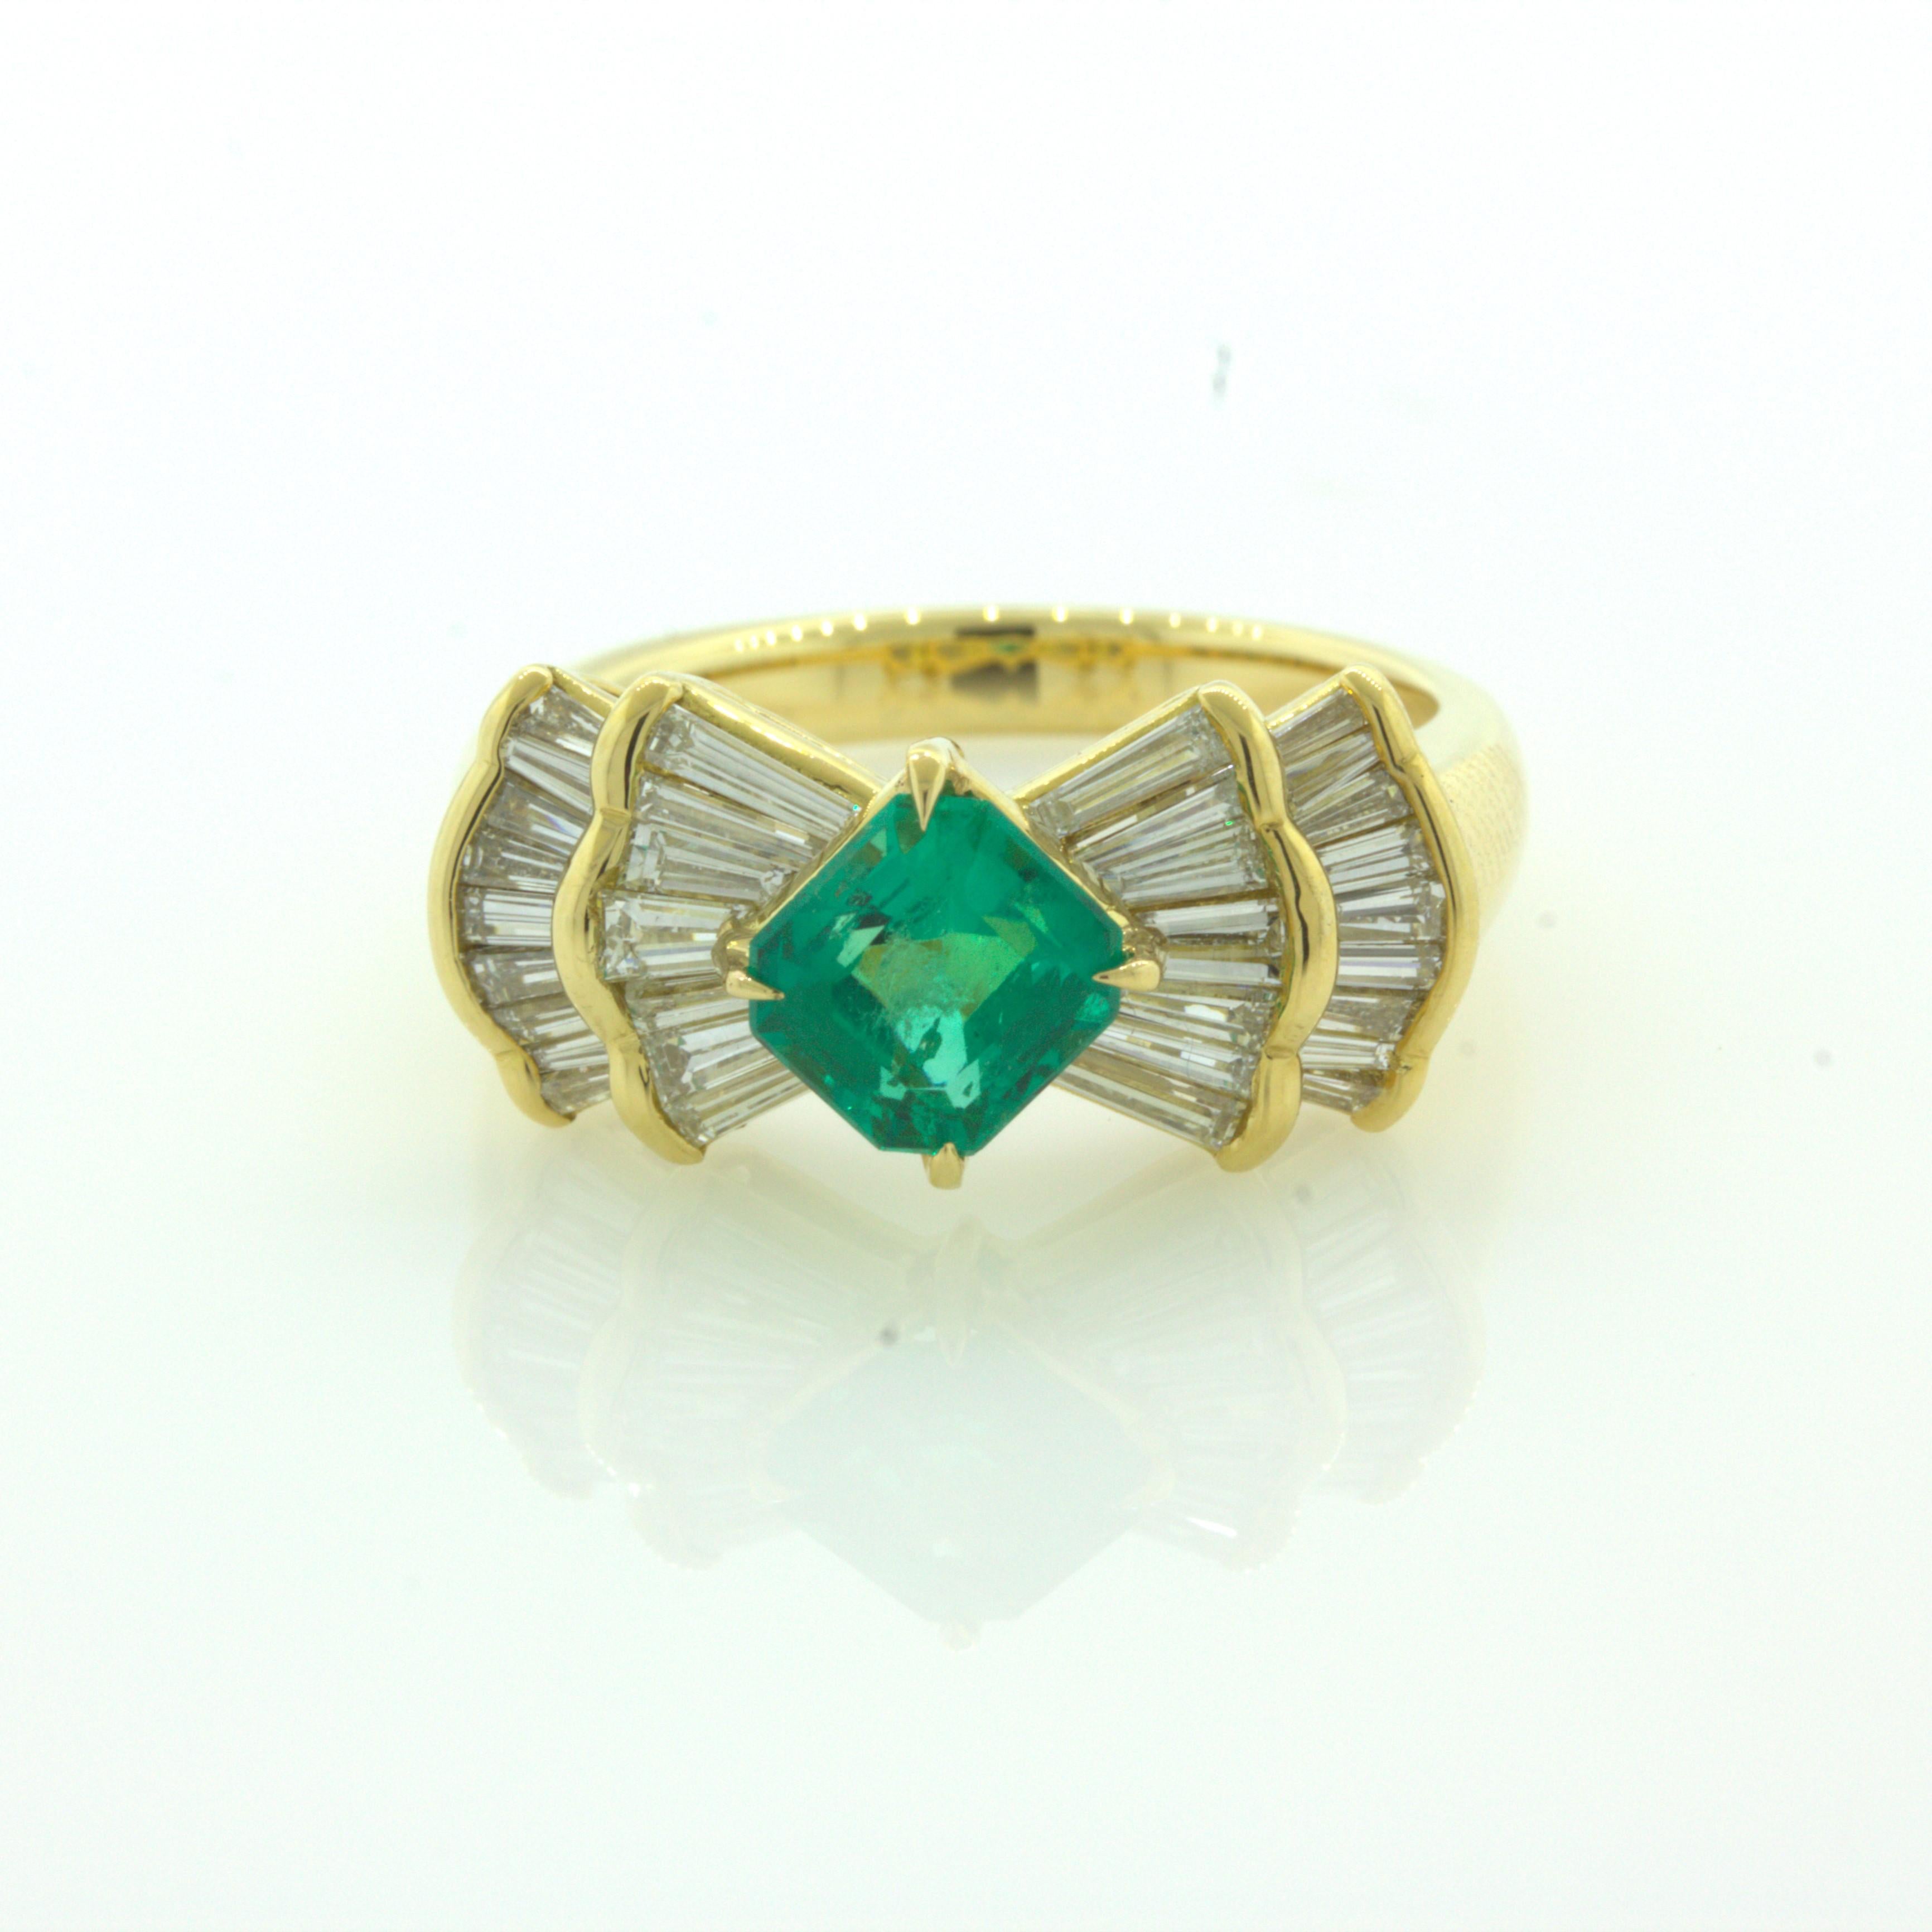 Ein schöner Gelbgoldring mit einem sehr feinen Smaragd von genau 1,00 Karat. Was diesen Stein besonders schön macht, ist seine helle und lebendige grüne Farbe, als ob man in ein reines grünes Glas schaut. Darüber hinaus hat der Smaragd einen